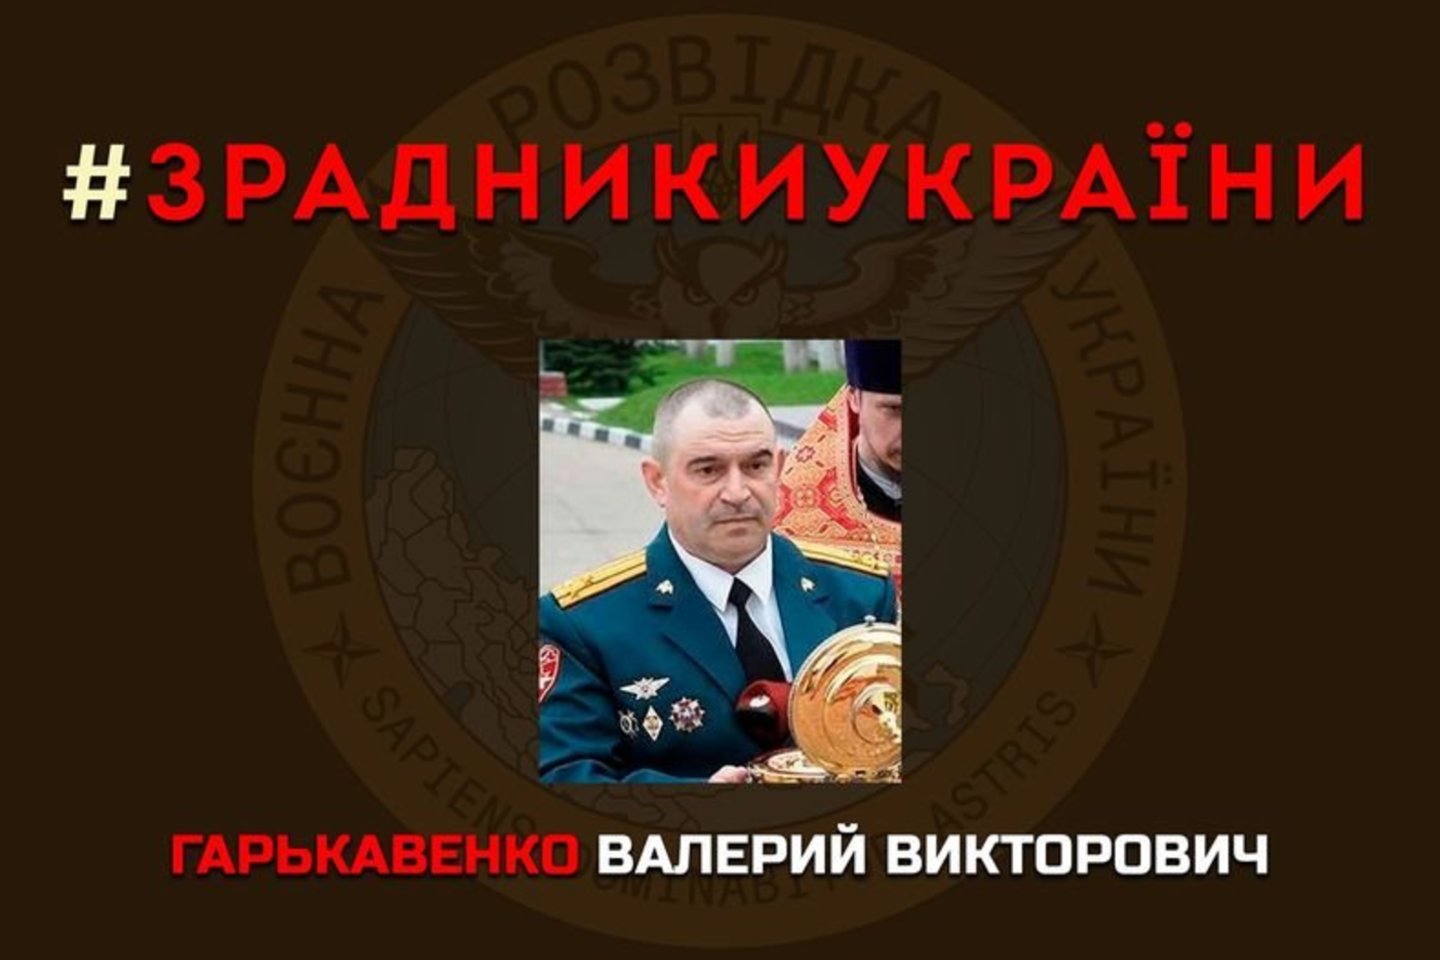  Išdavikas – Valerijus Viktorovičius Garkovenko, Rusijos Federacijos nacionalinės gvardijos centrinės apygardos 25-ojo specialiojo būrio „MERCURY“ (7459 padalinys, Žornivka, Smolensko sritis) vadas, pulkininkas.